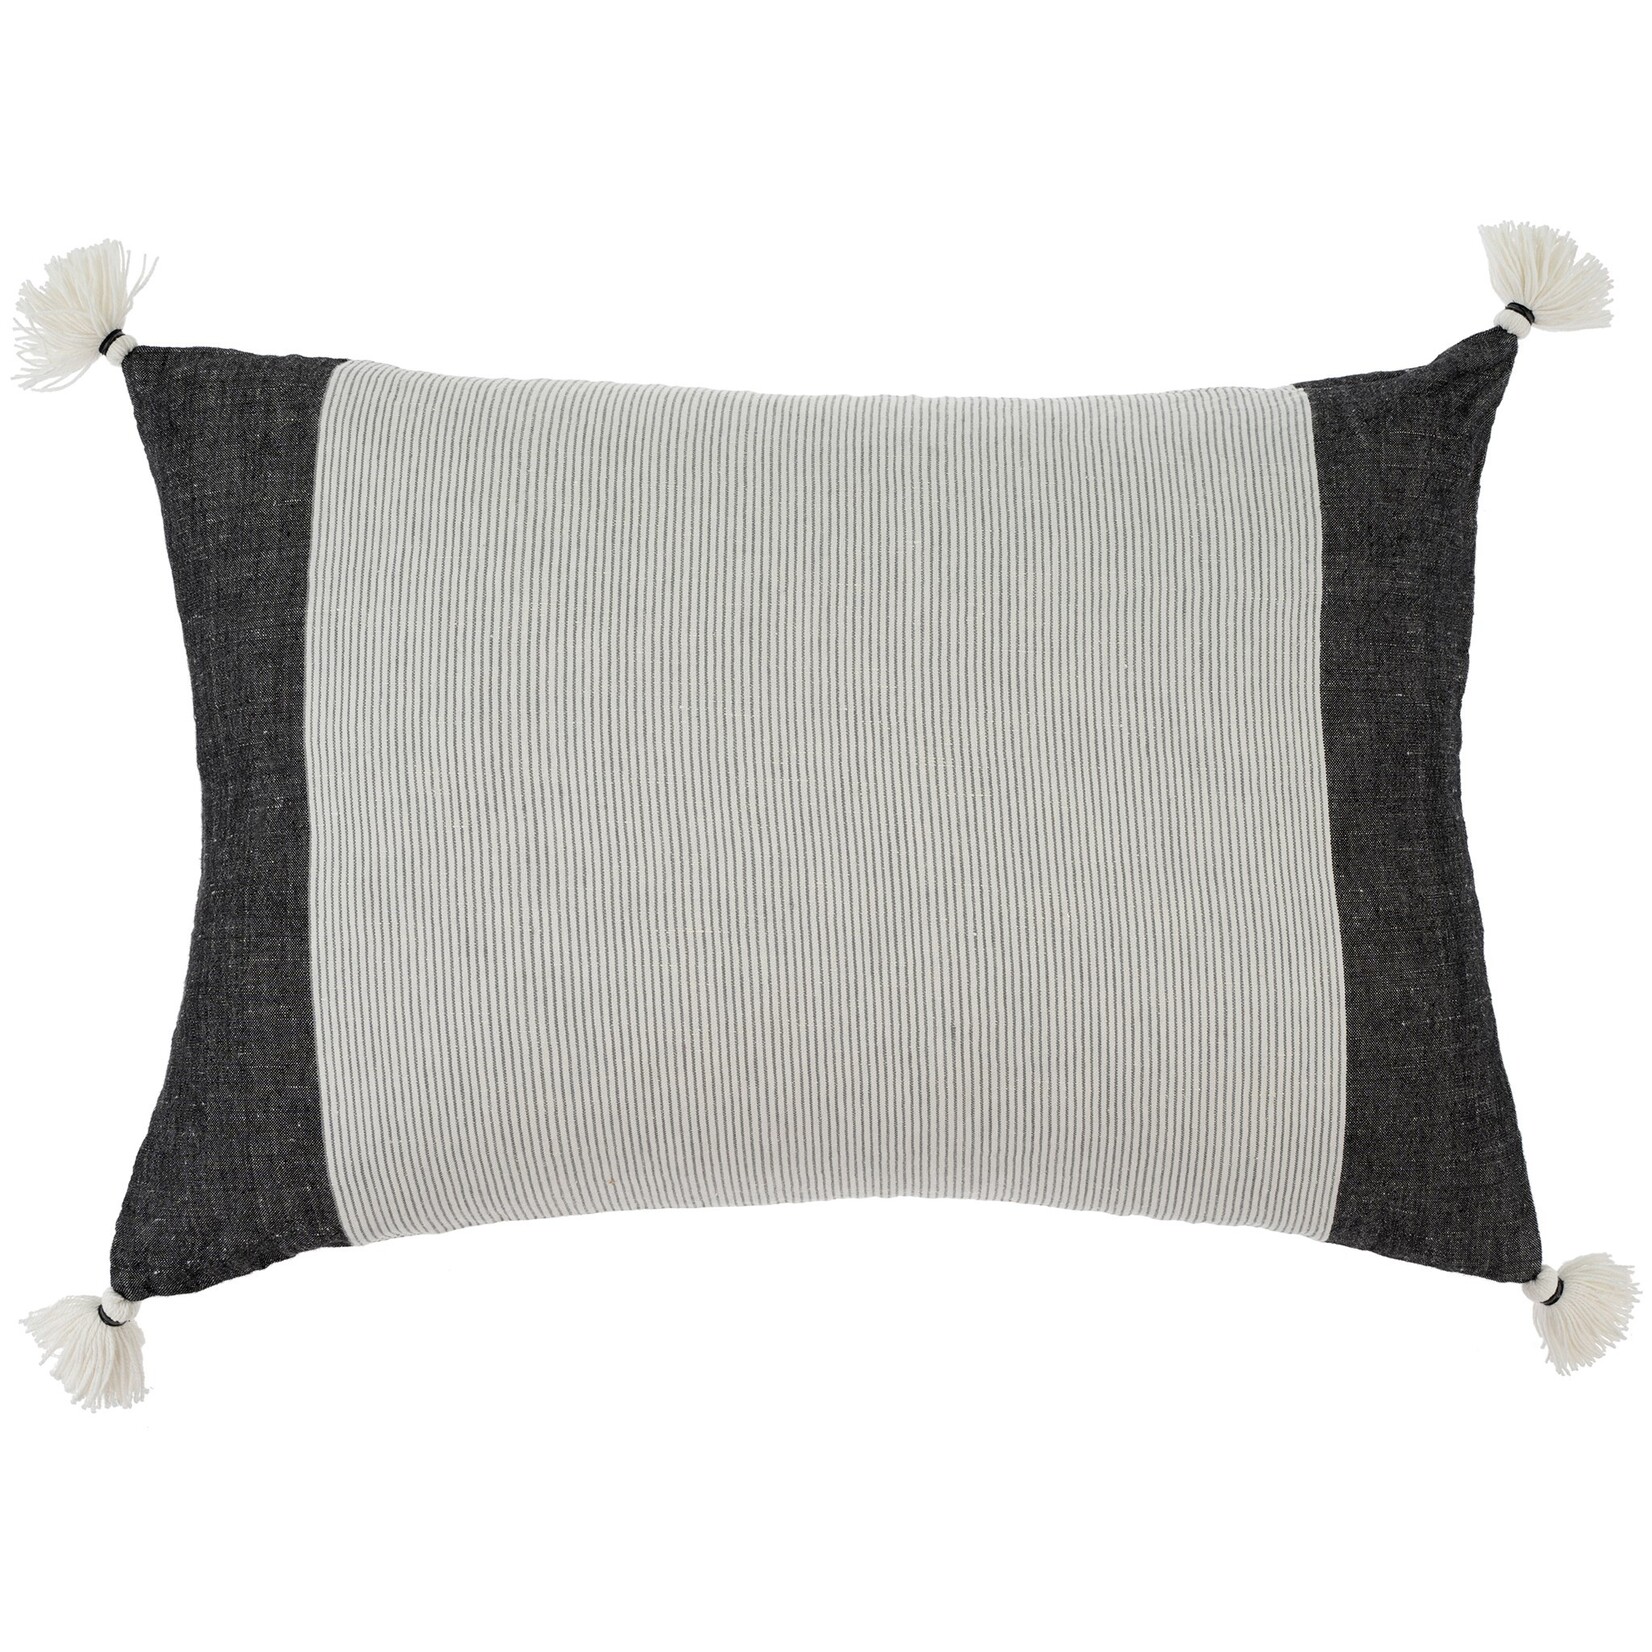 South Beach Linen Pillow - 16x24